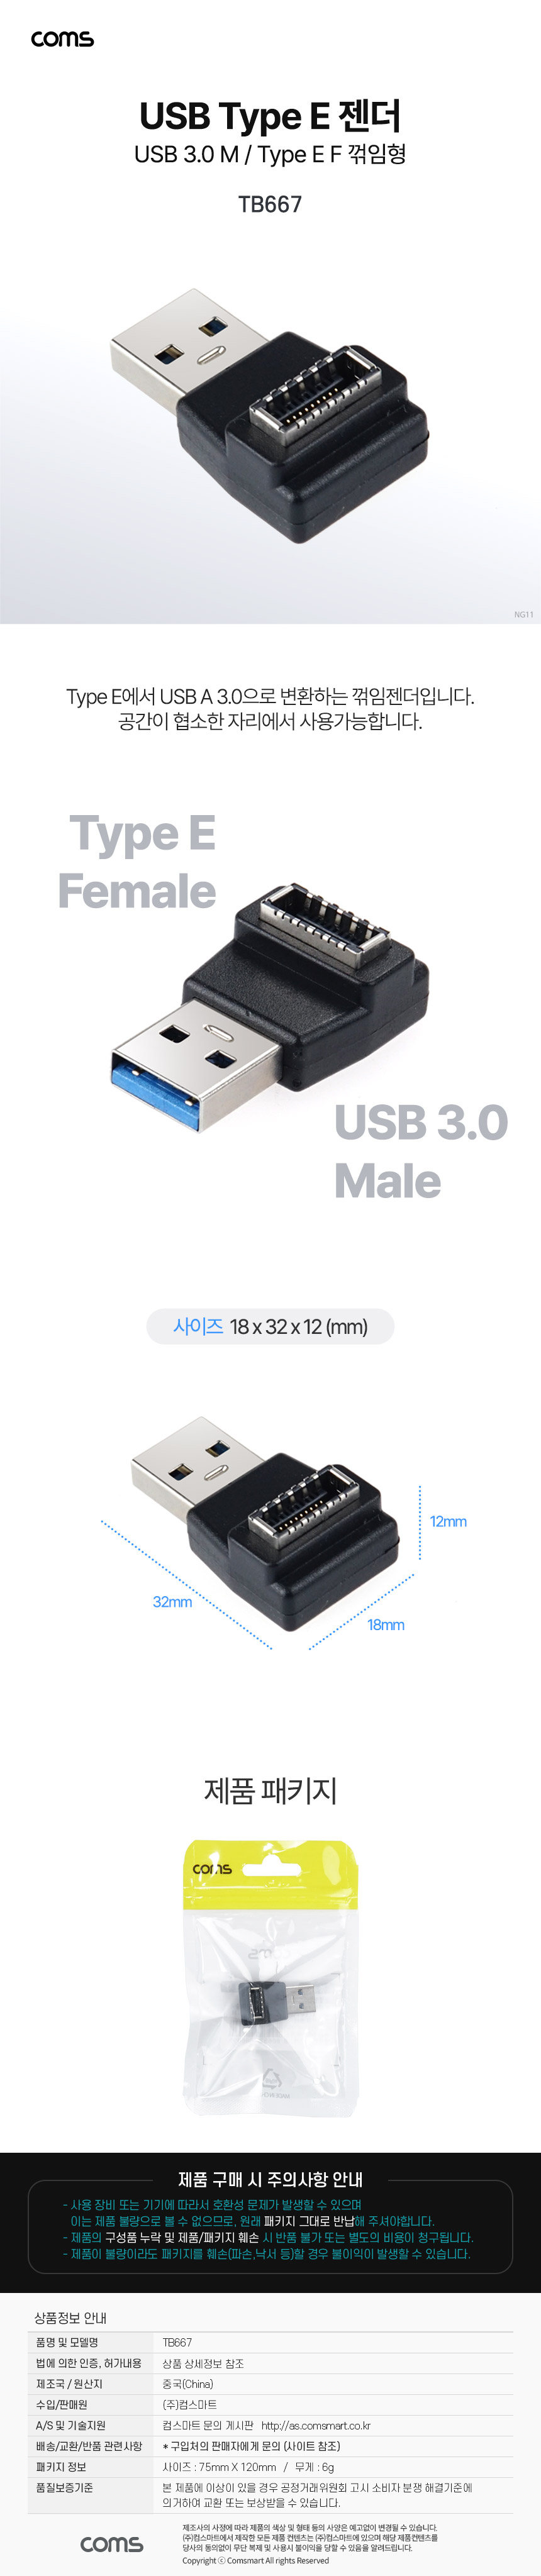 Type E ȯ EŸ F to USB 3.0 A M 